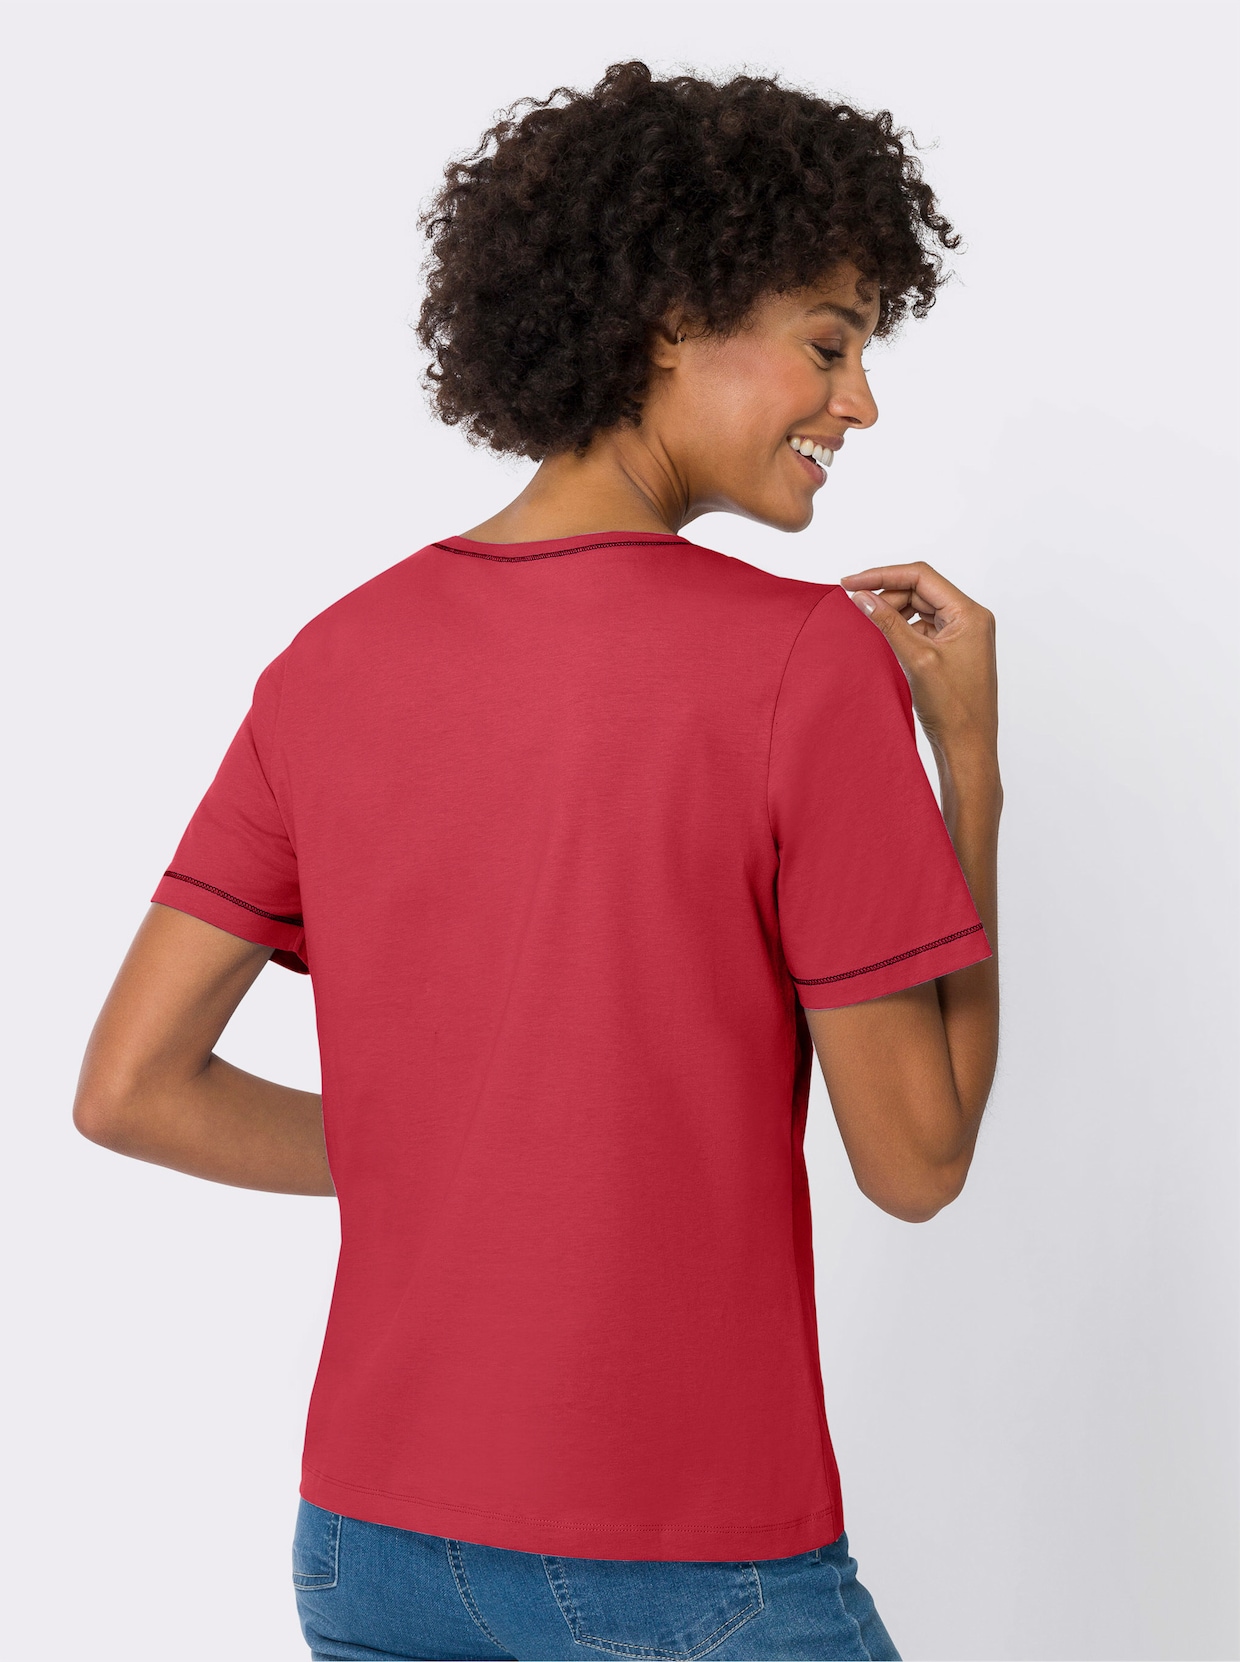 Kurzarm-Shirt - erdbeere-marine